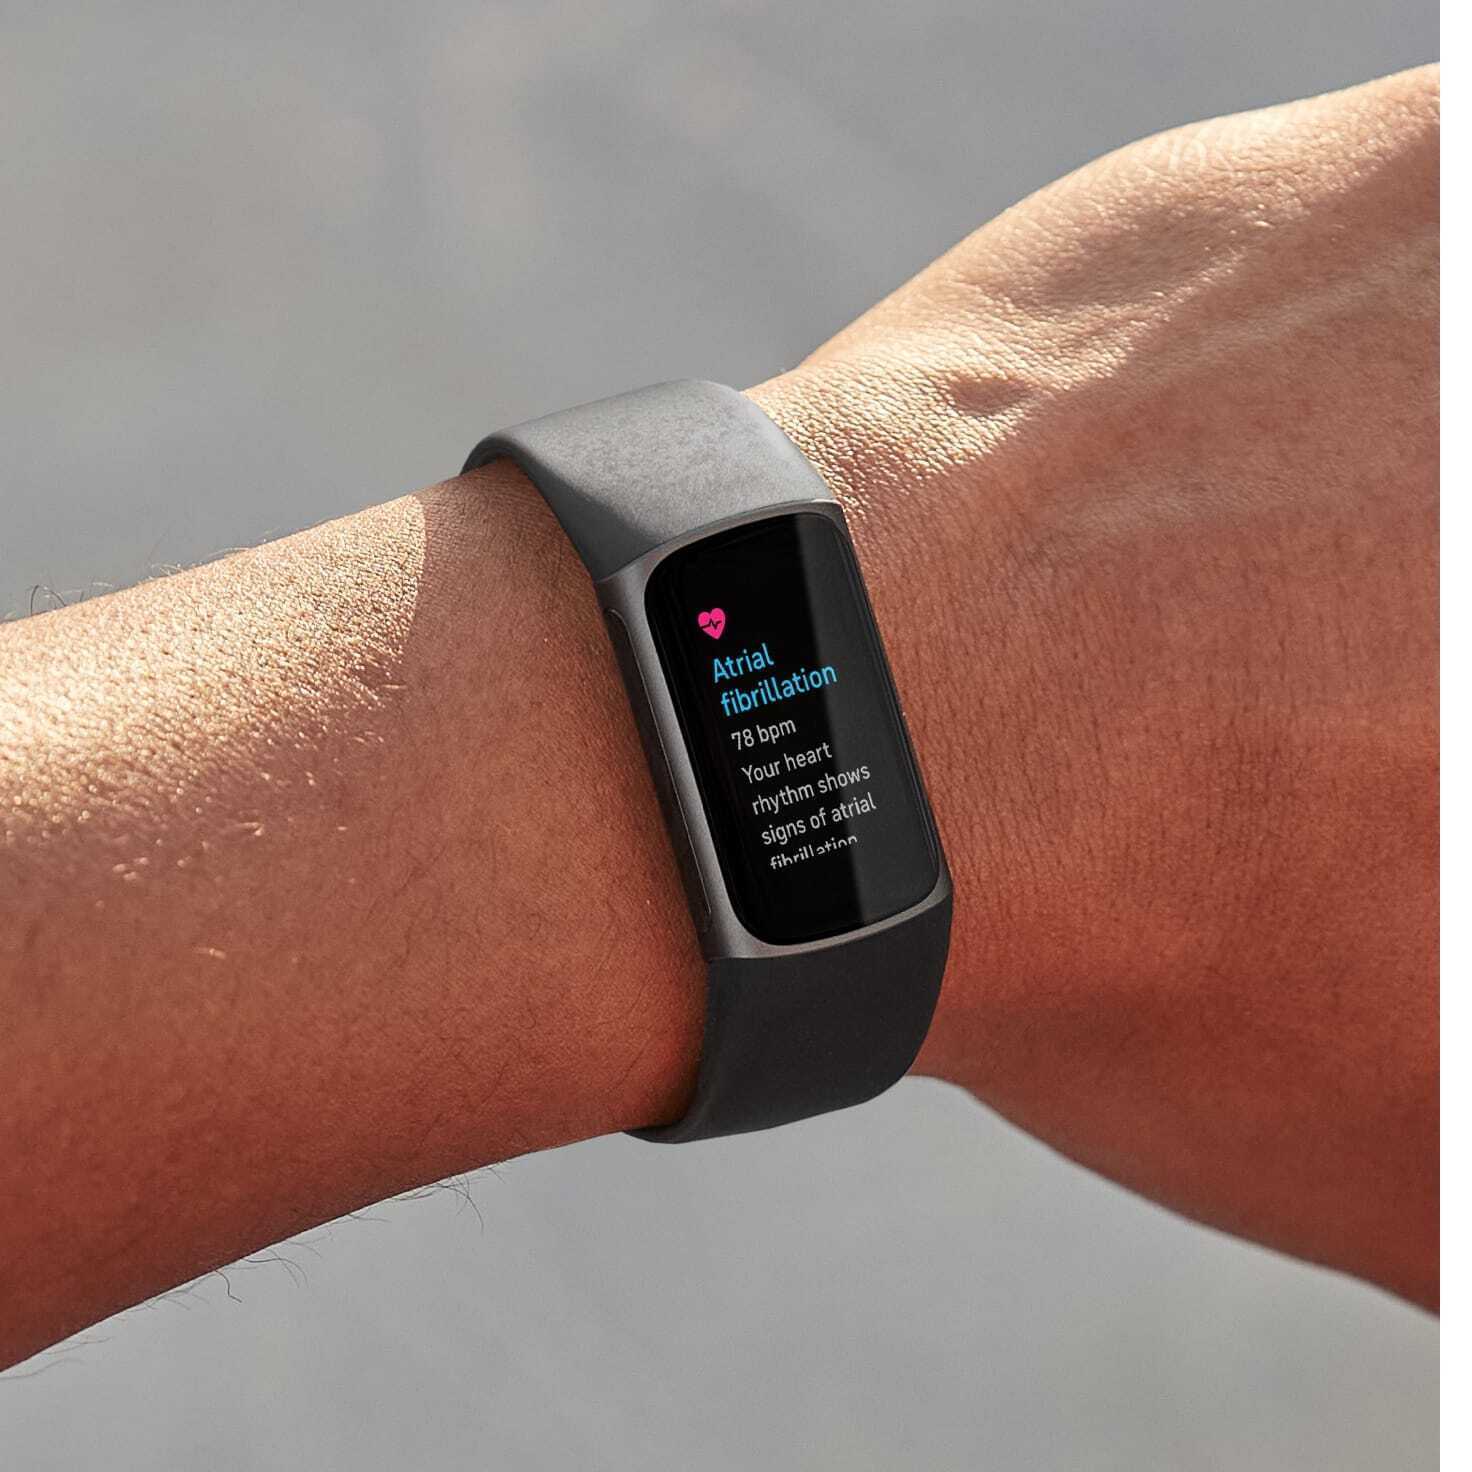 Bestimmte Fitbit-Modelle unterstützen EKG-Messungen zur Erkennung von Vorhofflimmern – Fitbit erhält die FDA-Zulassung, seinen Algorithmus zur Erkennung einer schweren Herzerkrankung zu verwenden